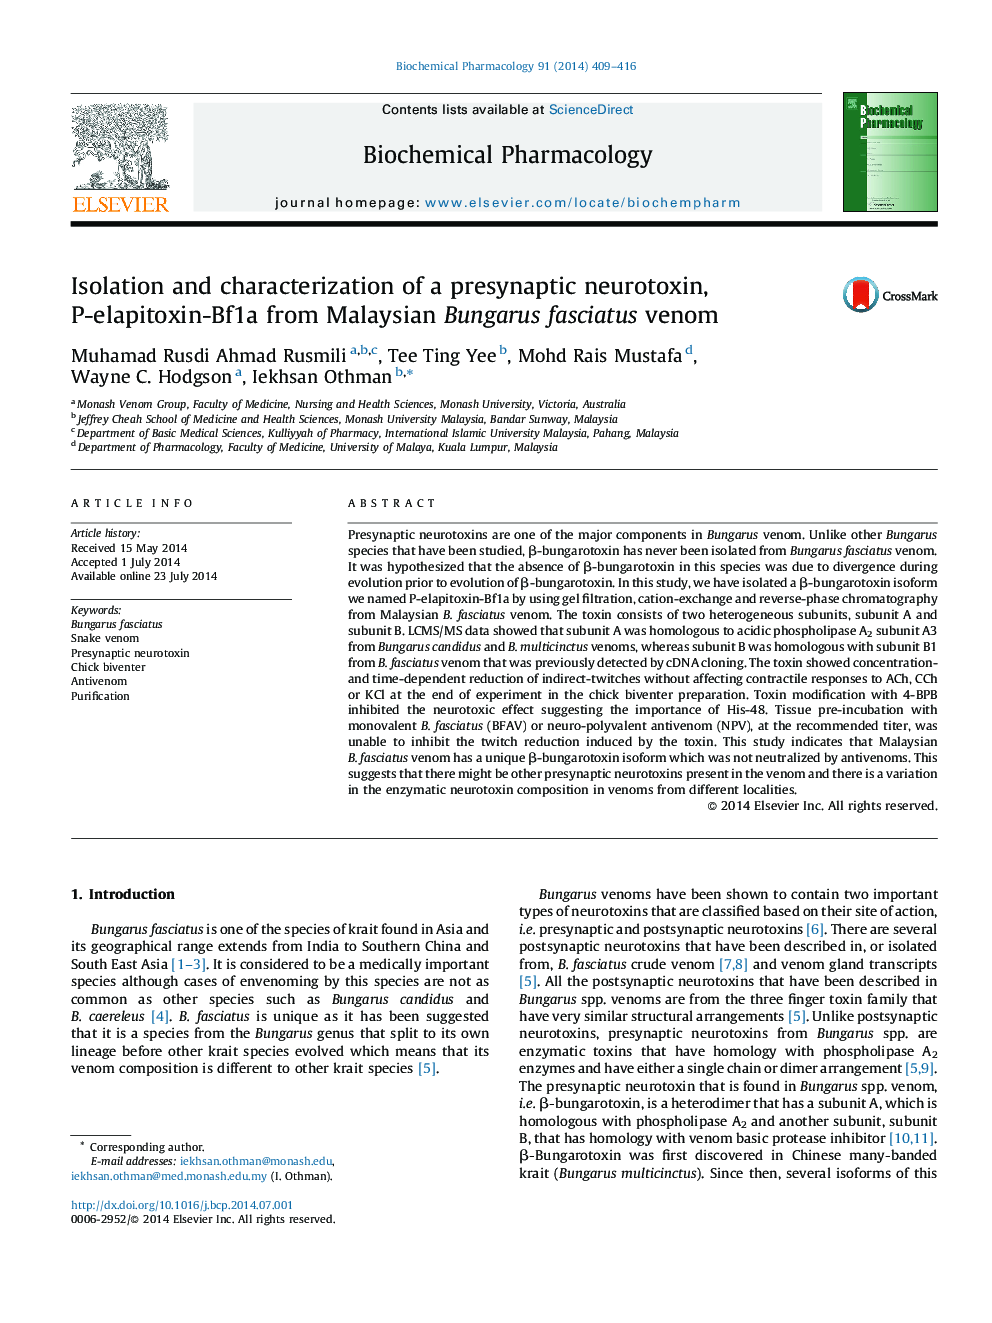 Isolation and characterization of a presynaptic neurotoxin, P-elapitoxin-Bf1a from Malaysian Bungarus fasciatus venom